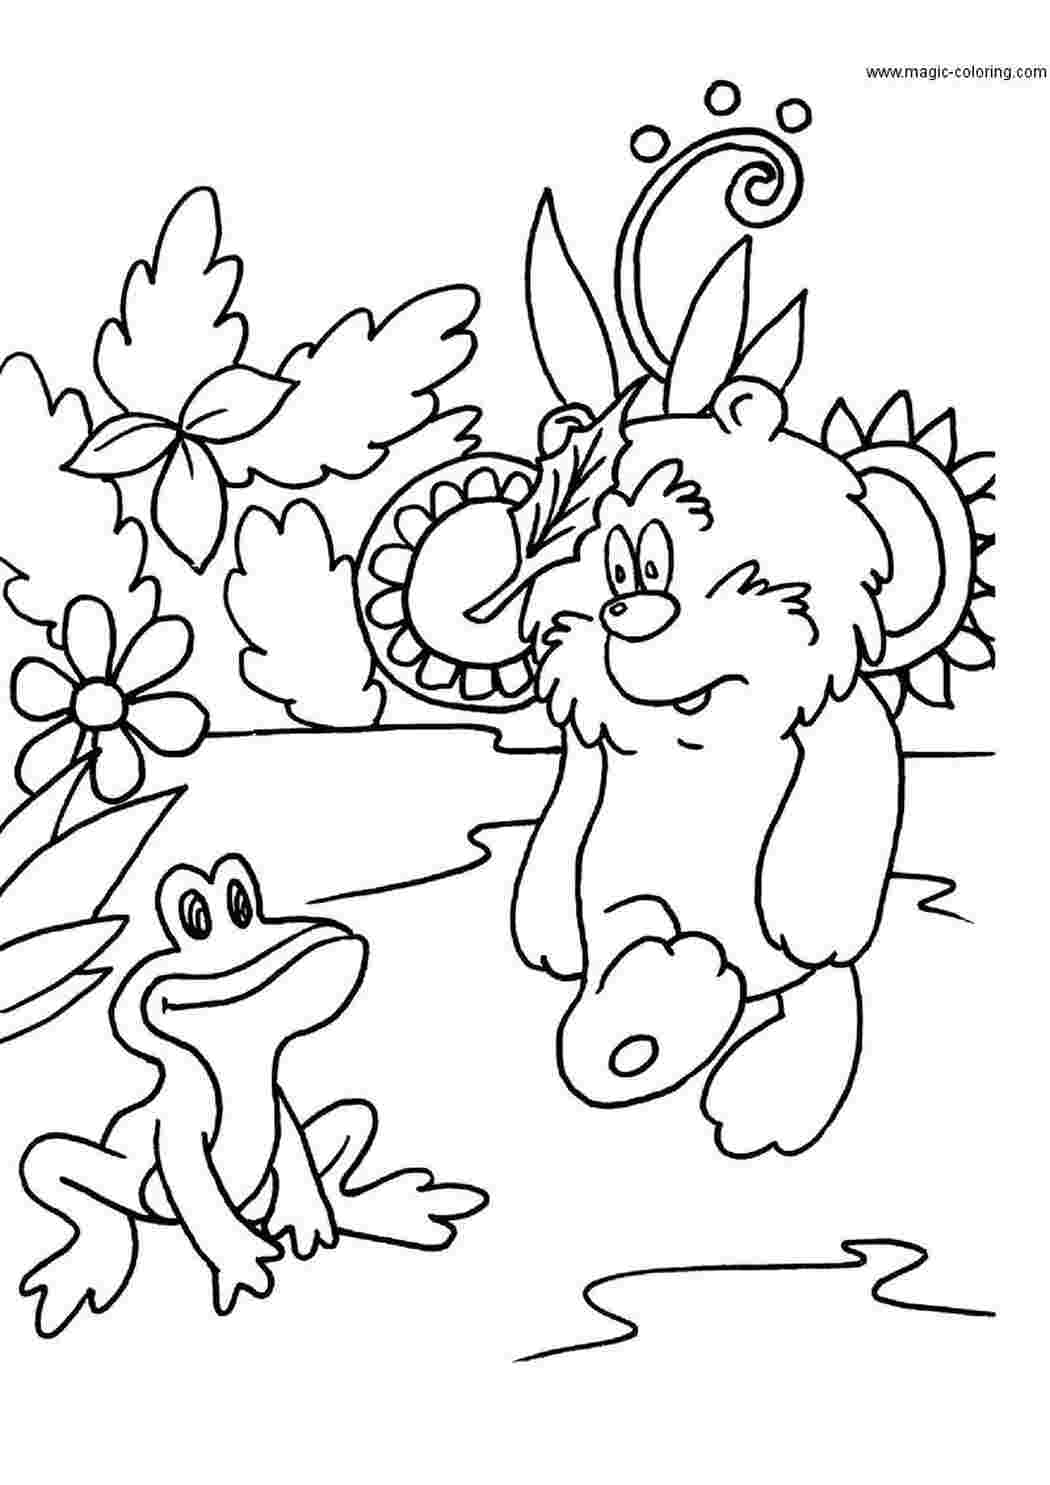 Раскраски Мишка смотрит на лягушонка, у мишки на лбу зацепился листочек Раскраски раскраски для детей по сказкам 